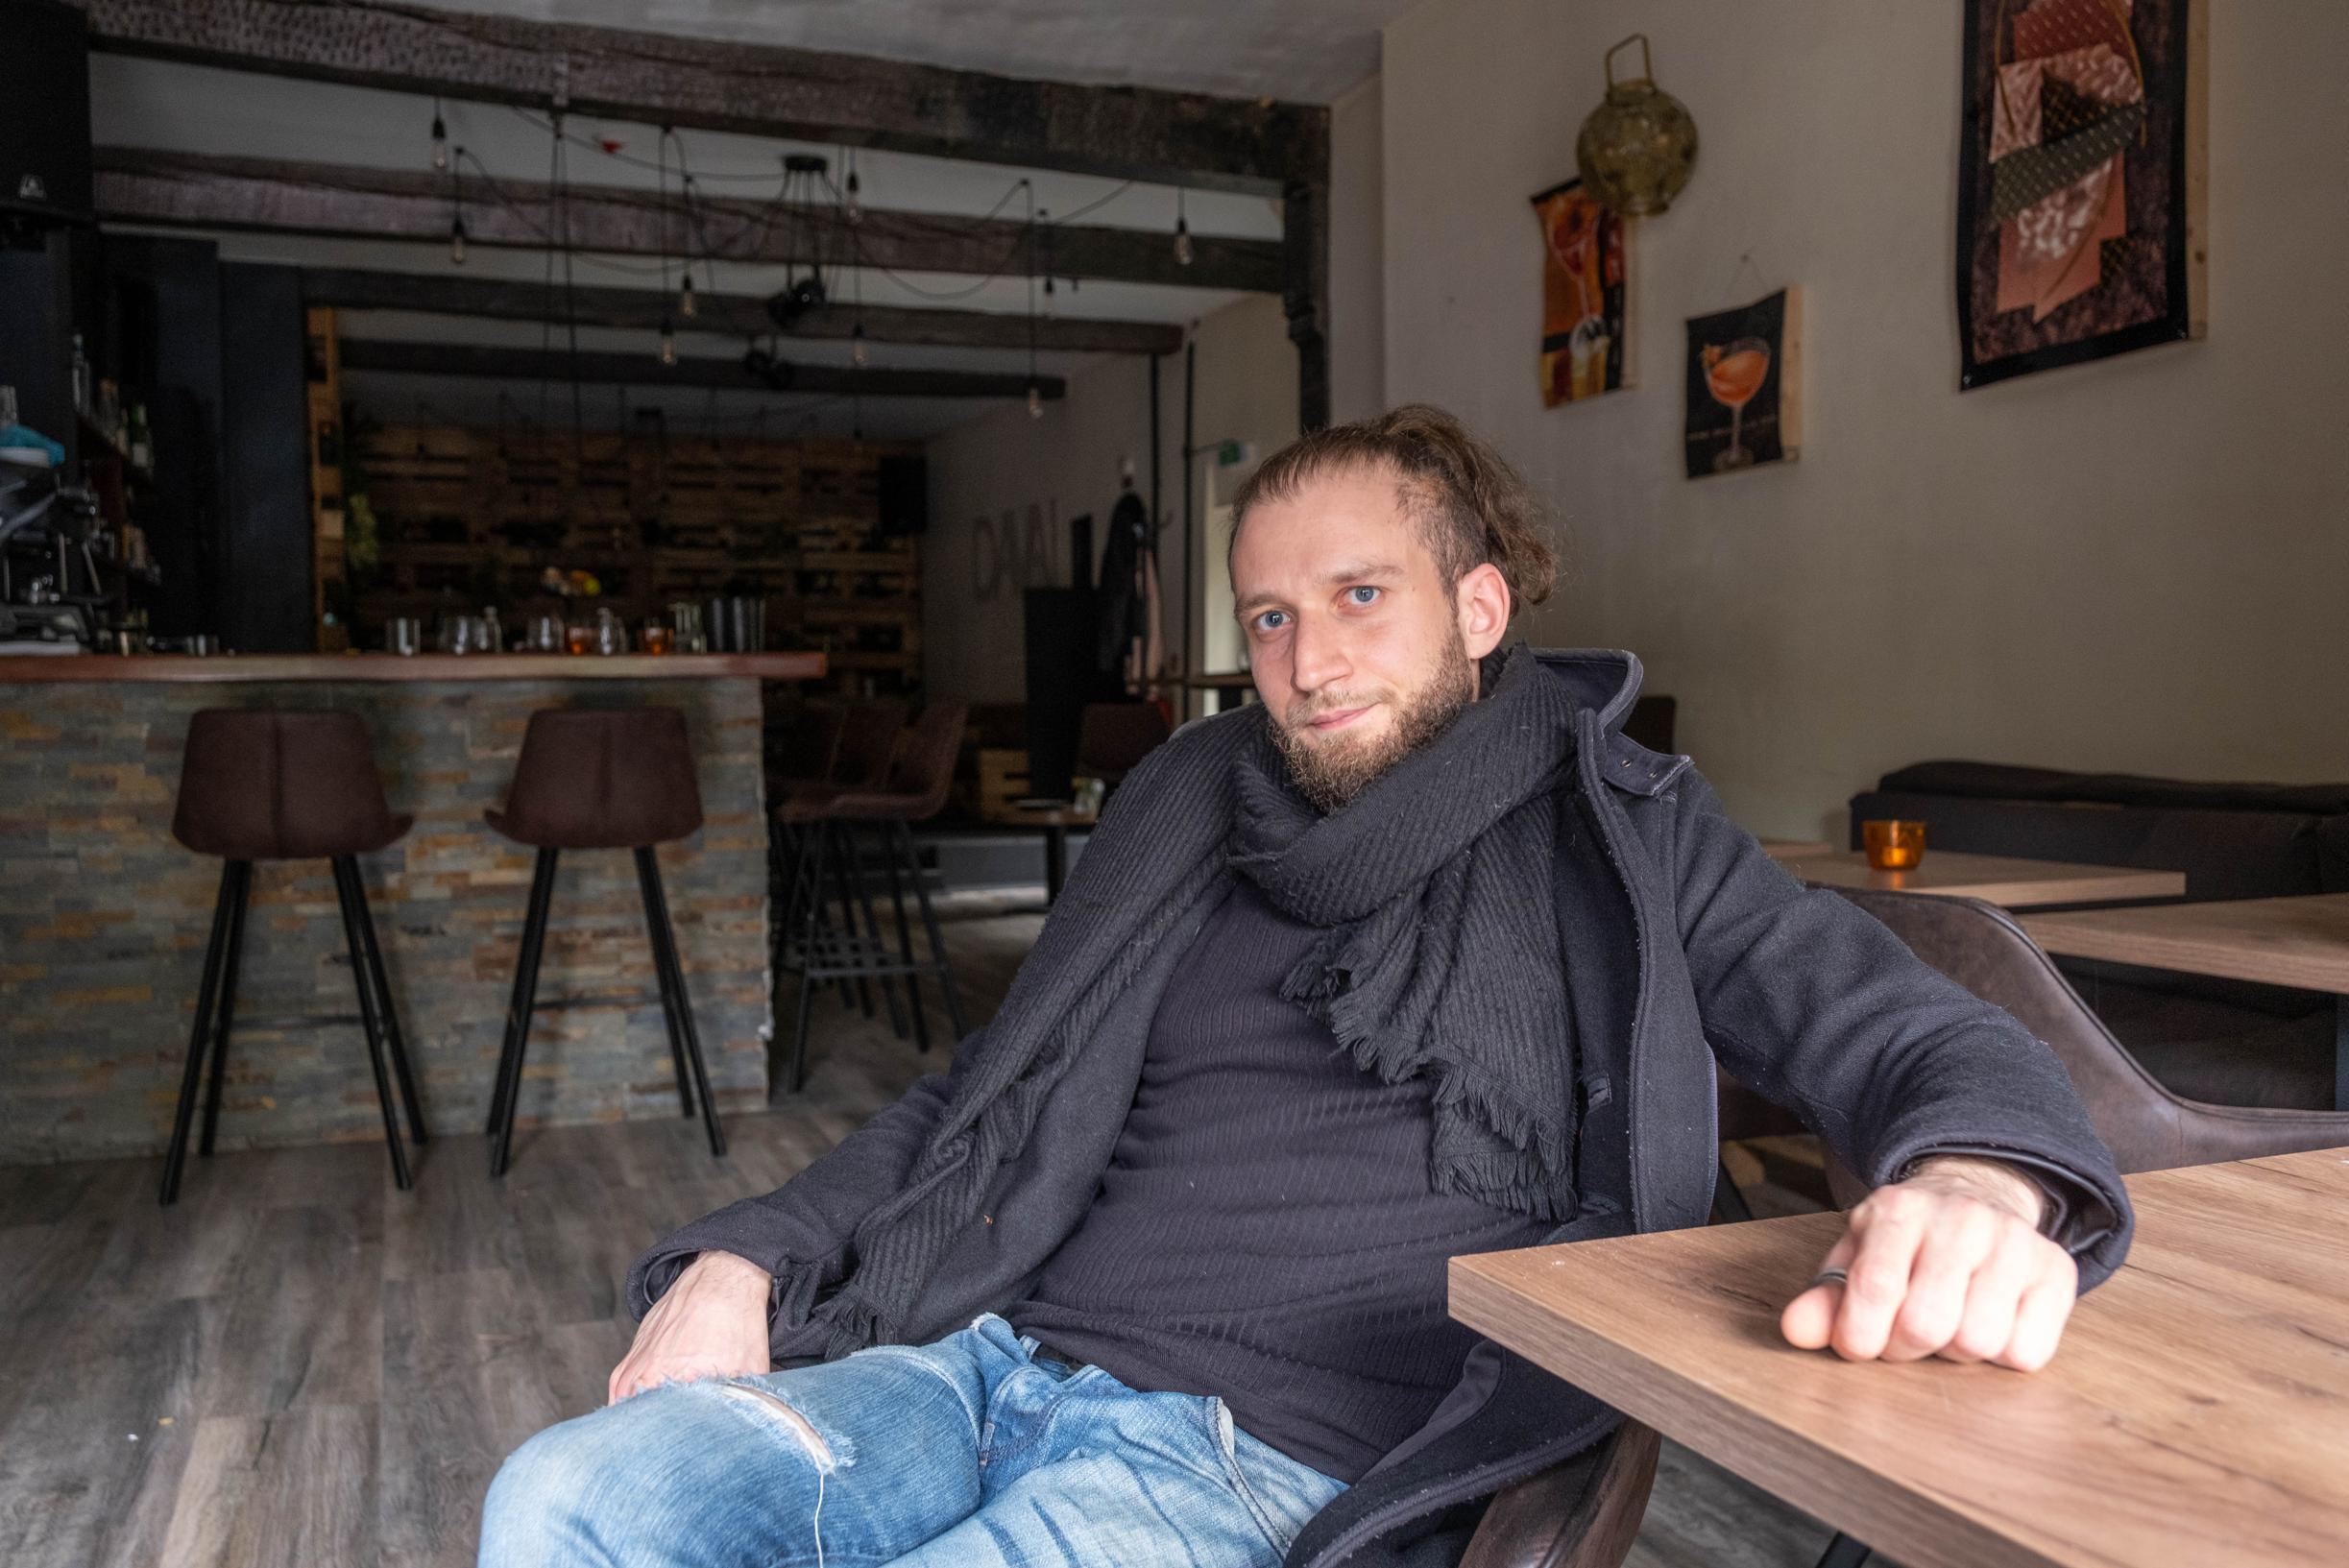 Русский коктейль-бар Tawai в Антверпене обанкротился: «Россия превратилась в страшилку, теперь у меня есть только 10 евро» (Антверпен)